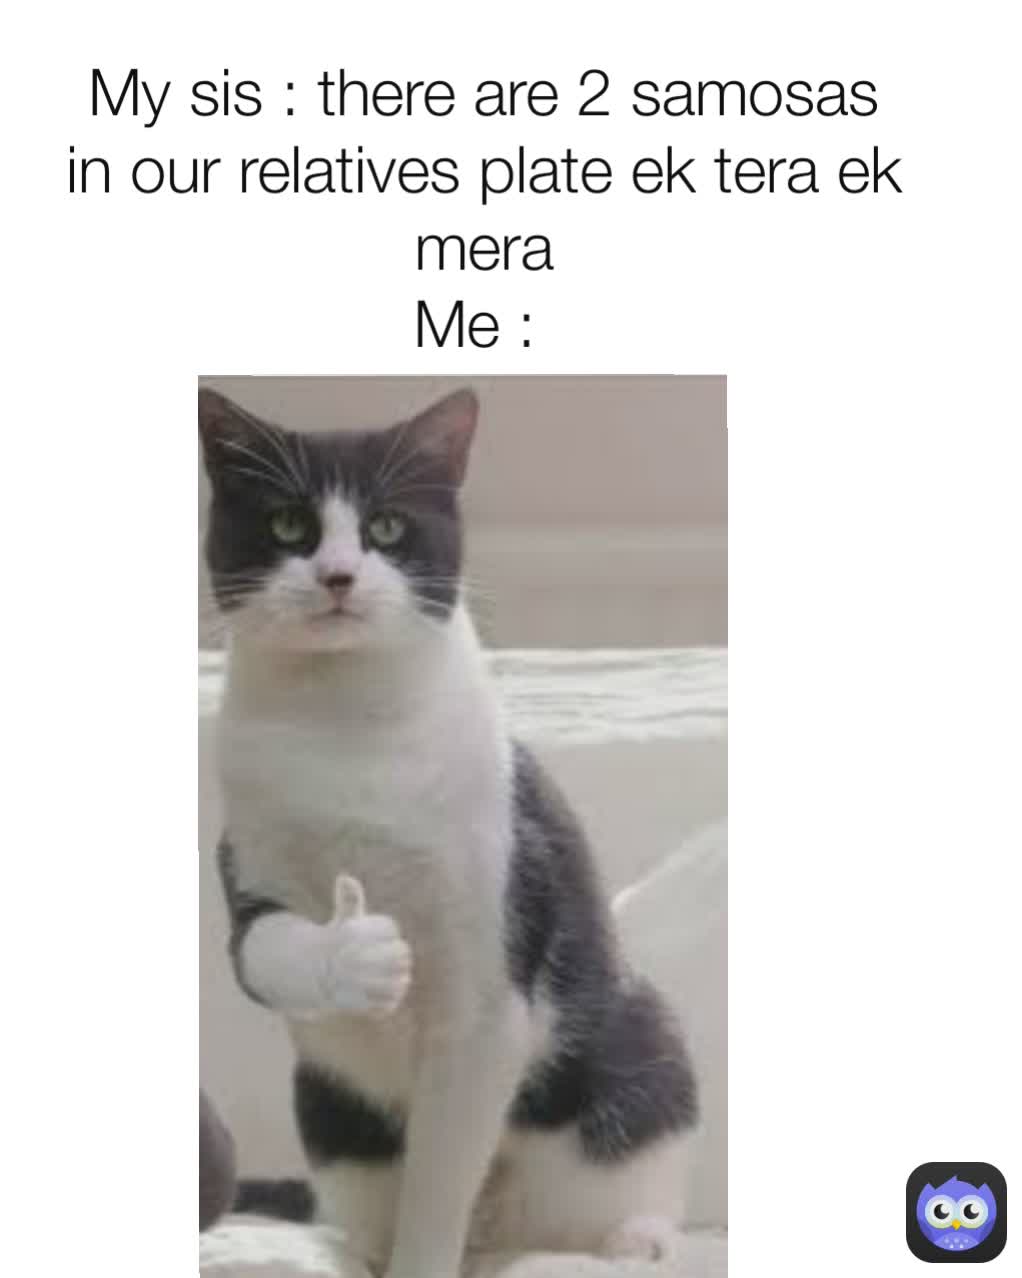 My sis : there are 2 samosas in our relatives plate ek tera ek mera
Me : 